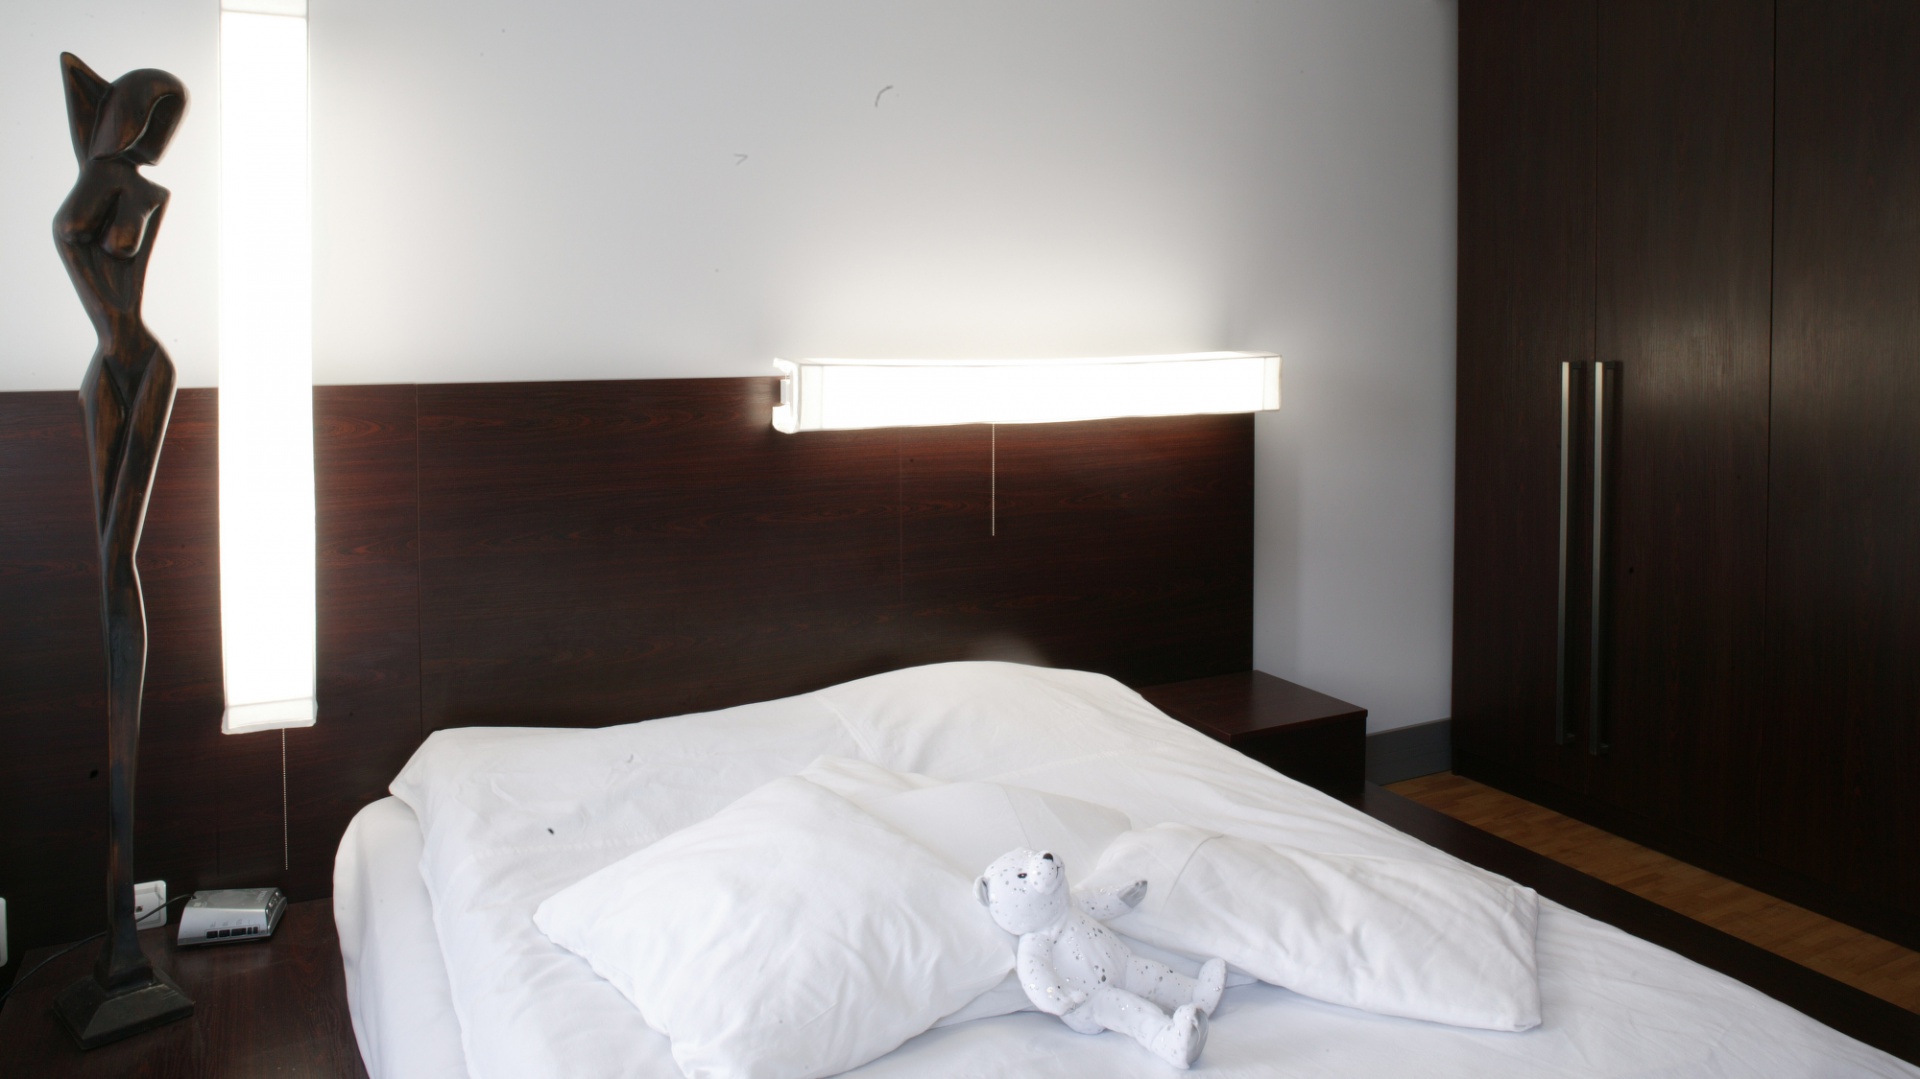 Wystrój sypialni dla minimalistów: biel i czekolada